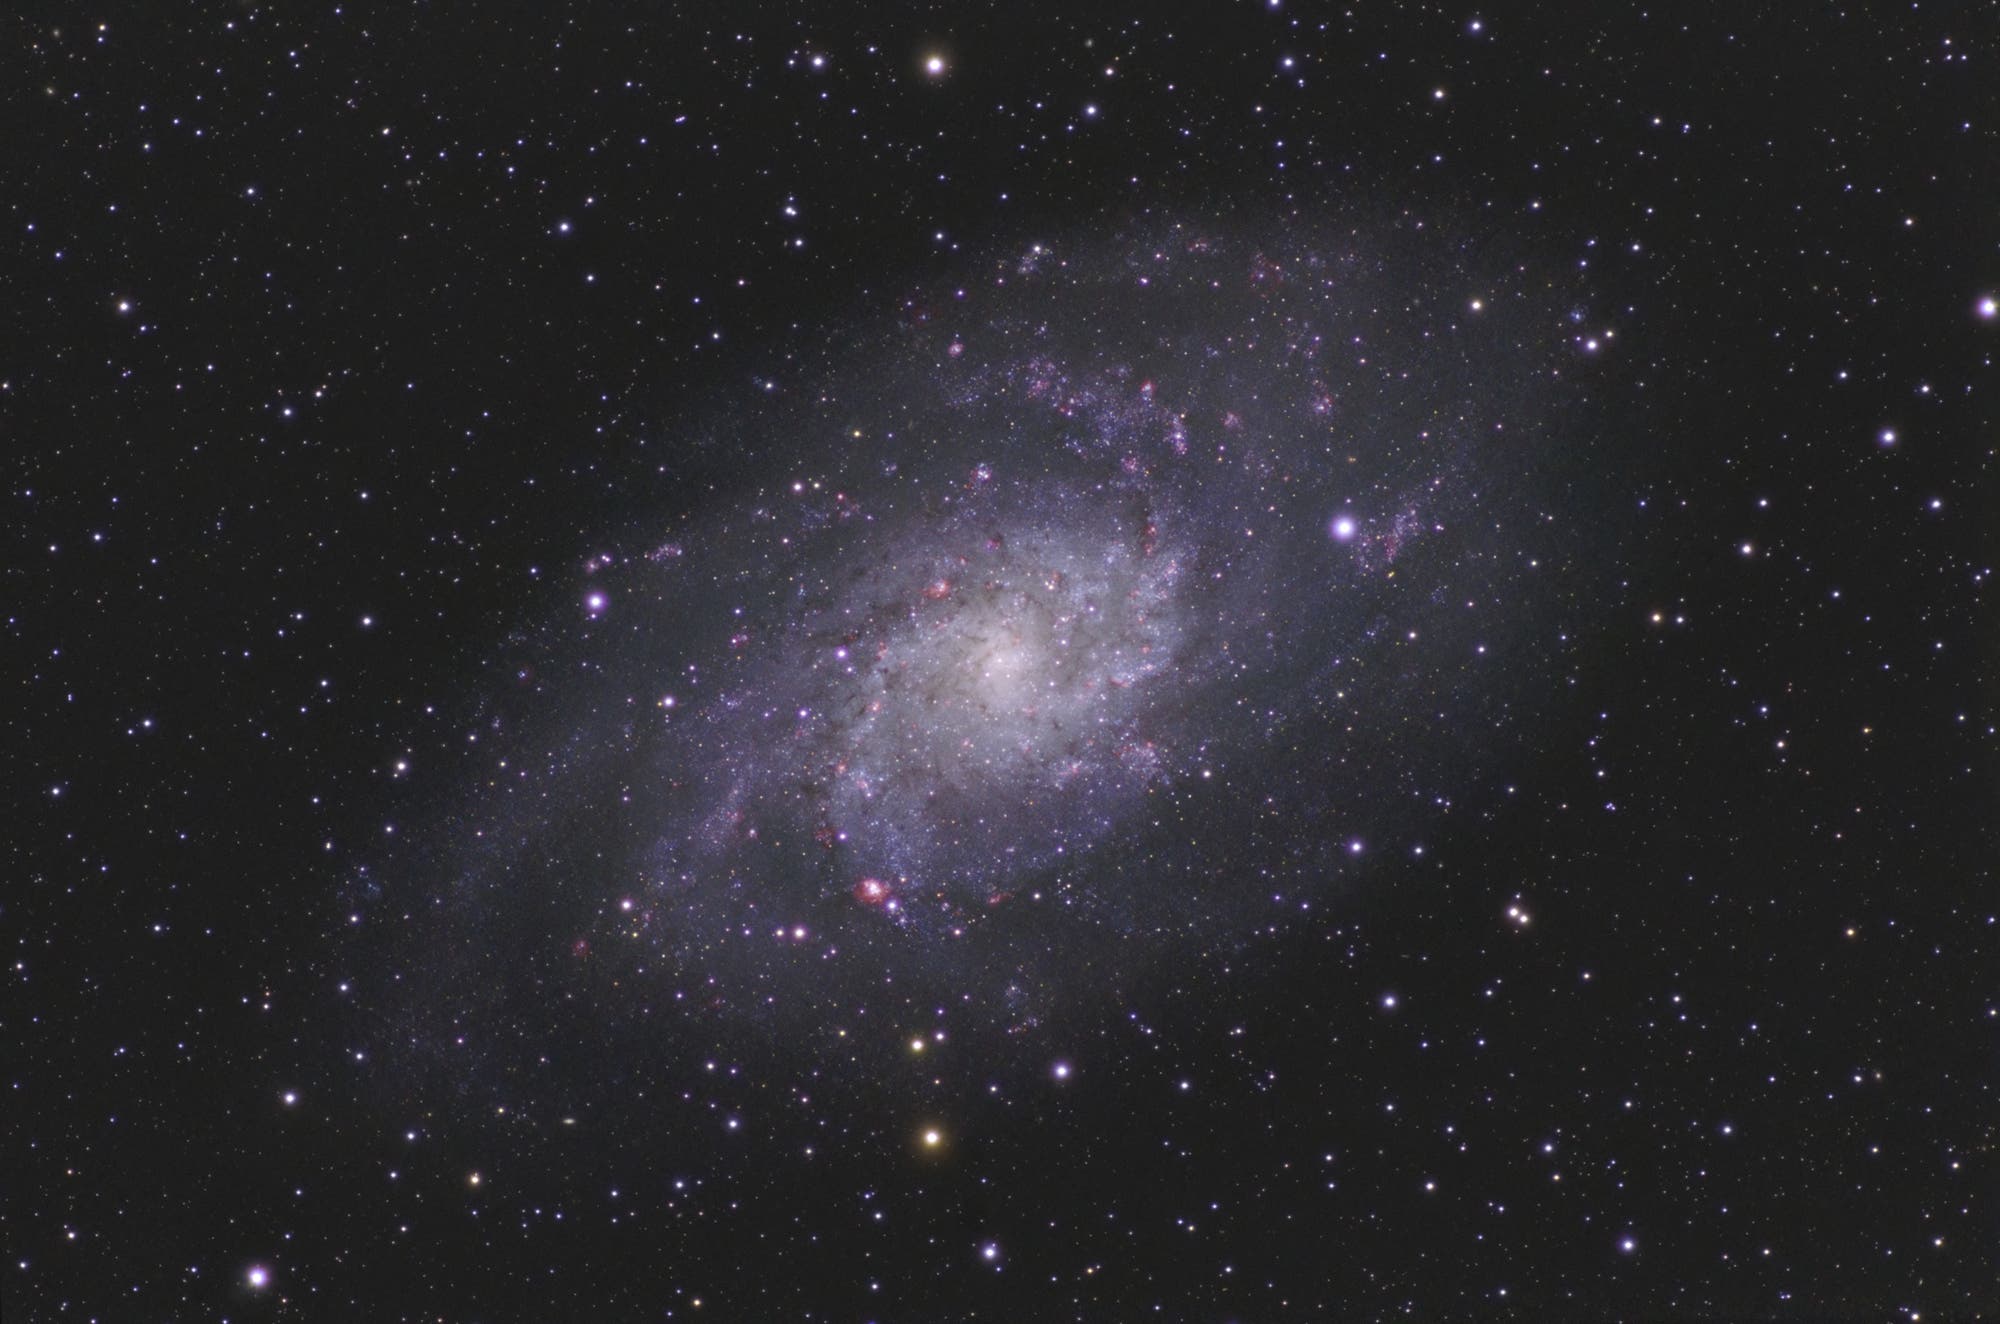 Triangulum Galaxie M33